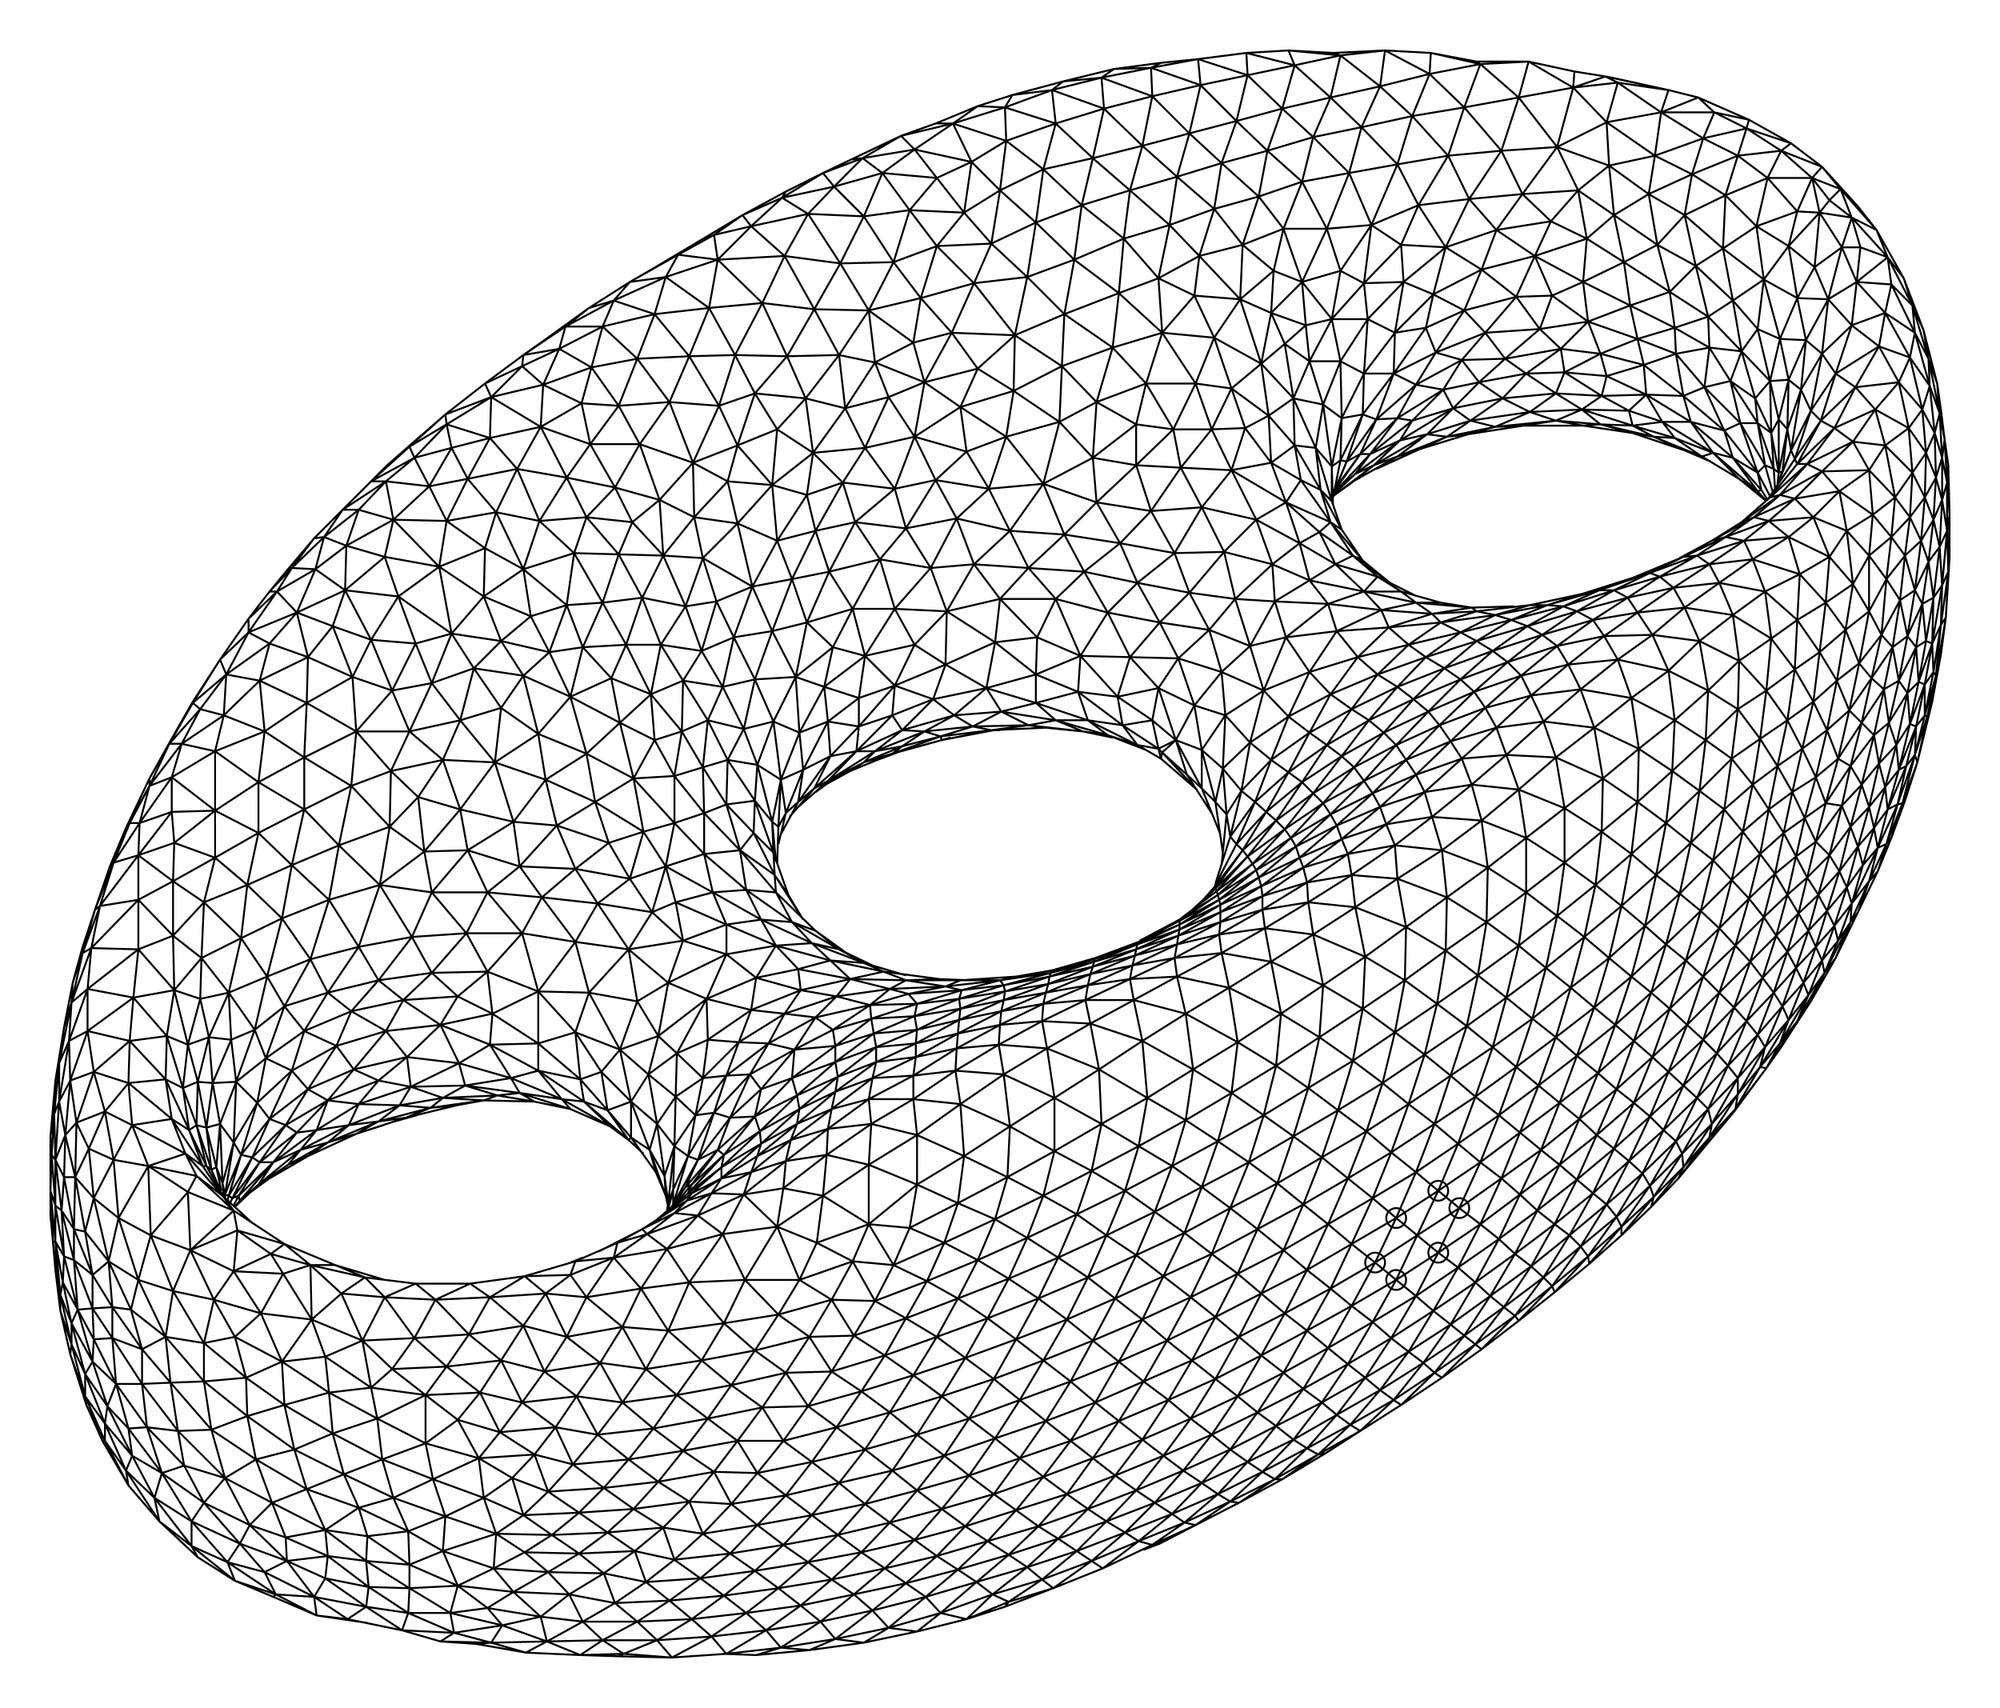 Die Oberfläche einer Brezel, die mit einem Netz aus Dreiecken überdeckt ist.